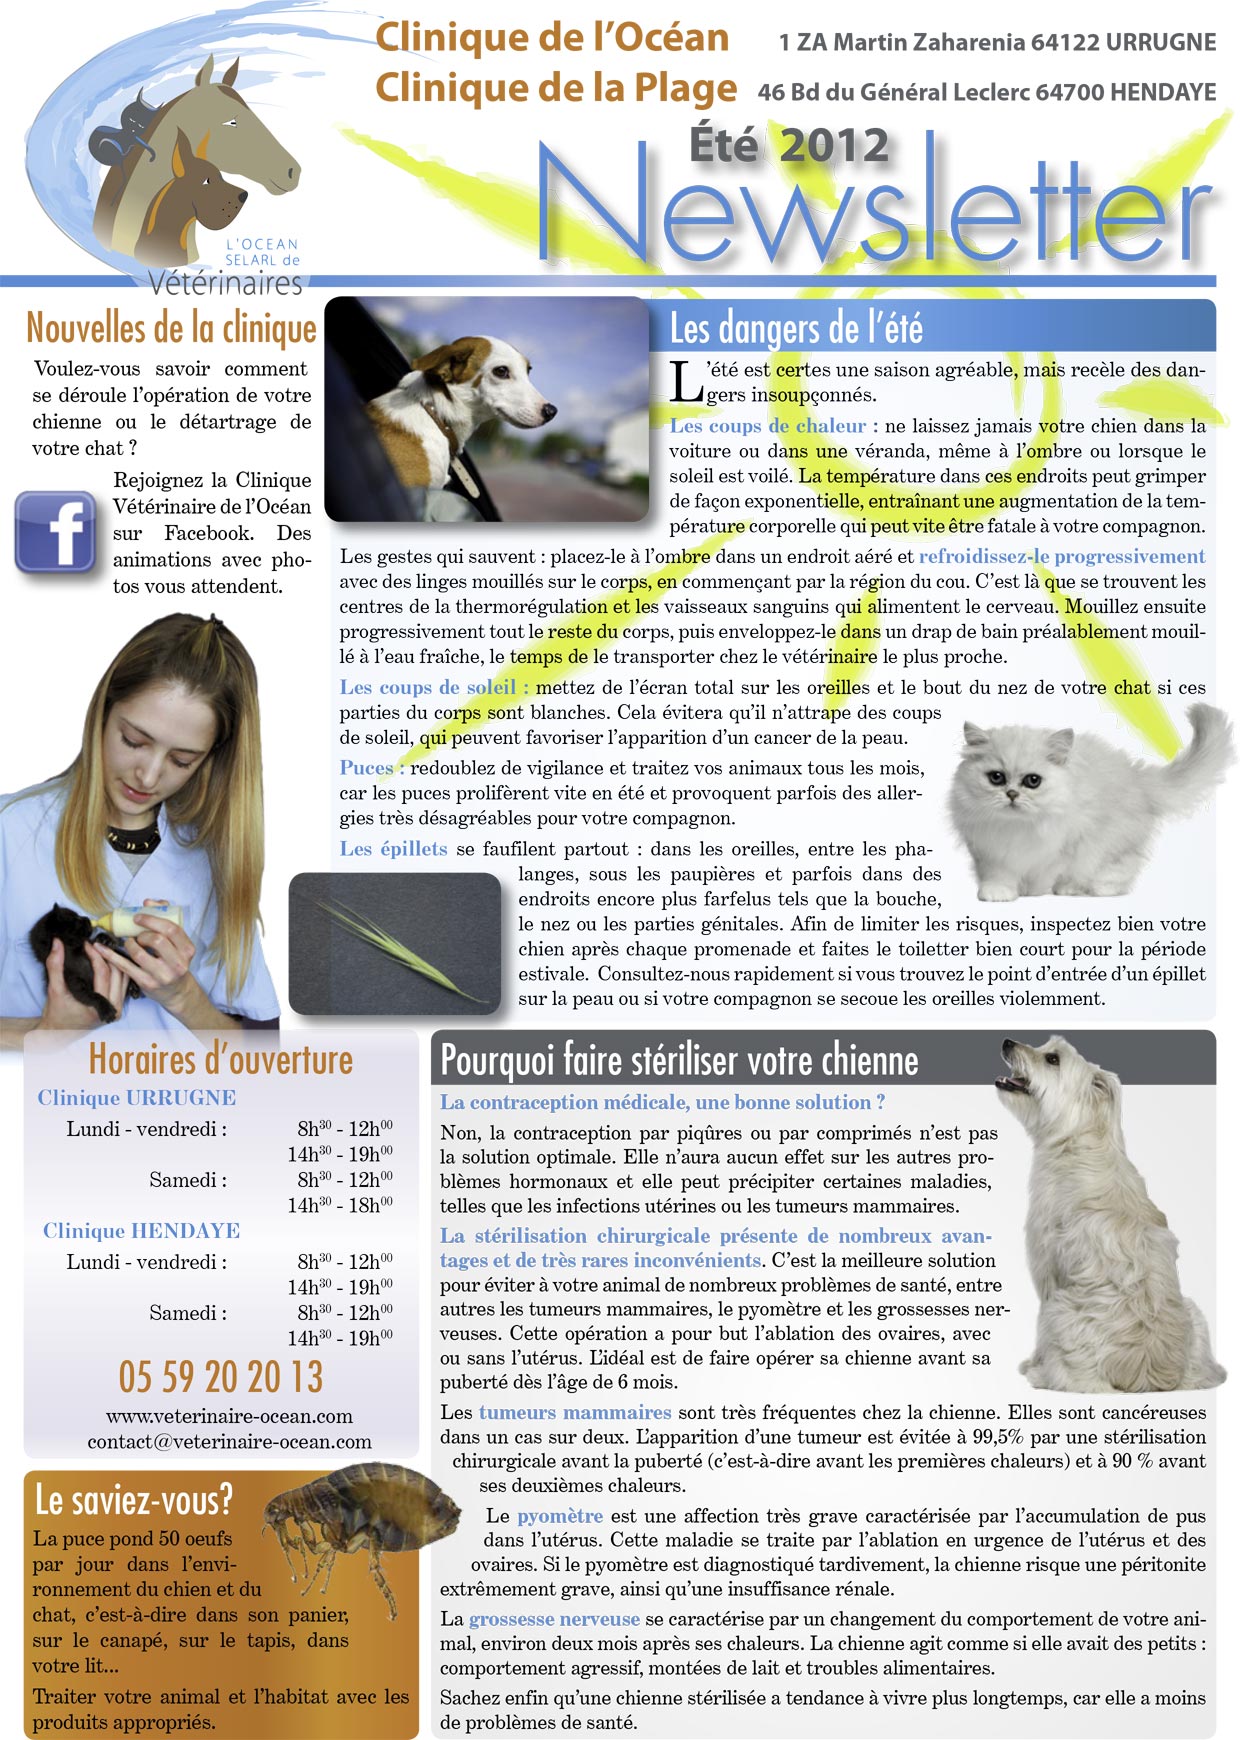 Newsletter - Eté 2012 page 1